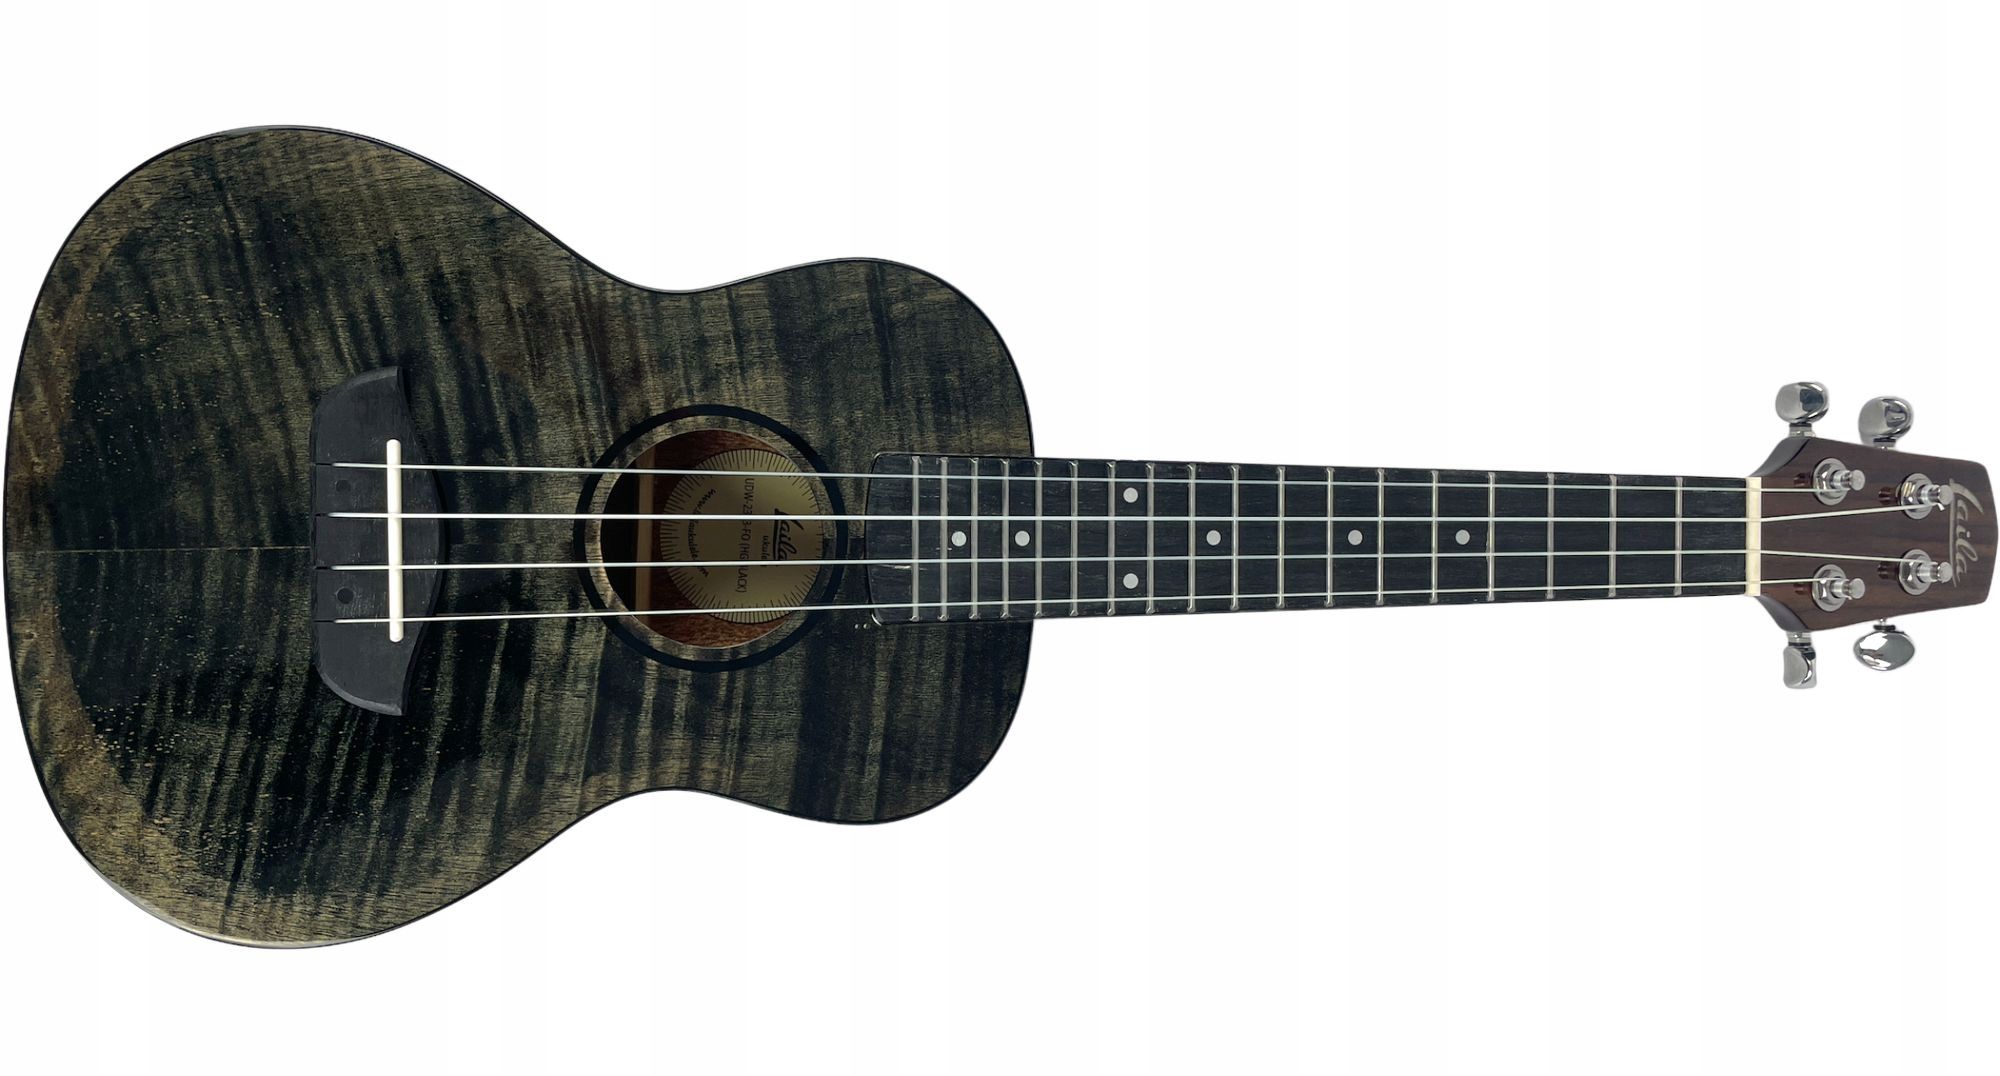 Laila UDW-2313-FO (HG Black) ukulele koncertowe + POKROWIEC